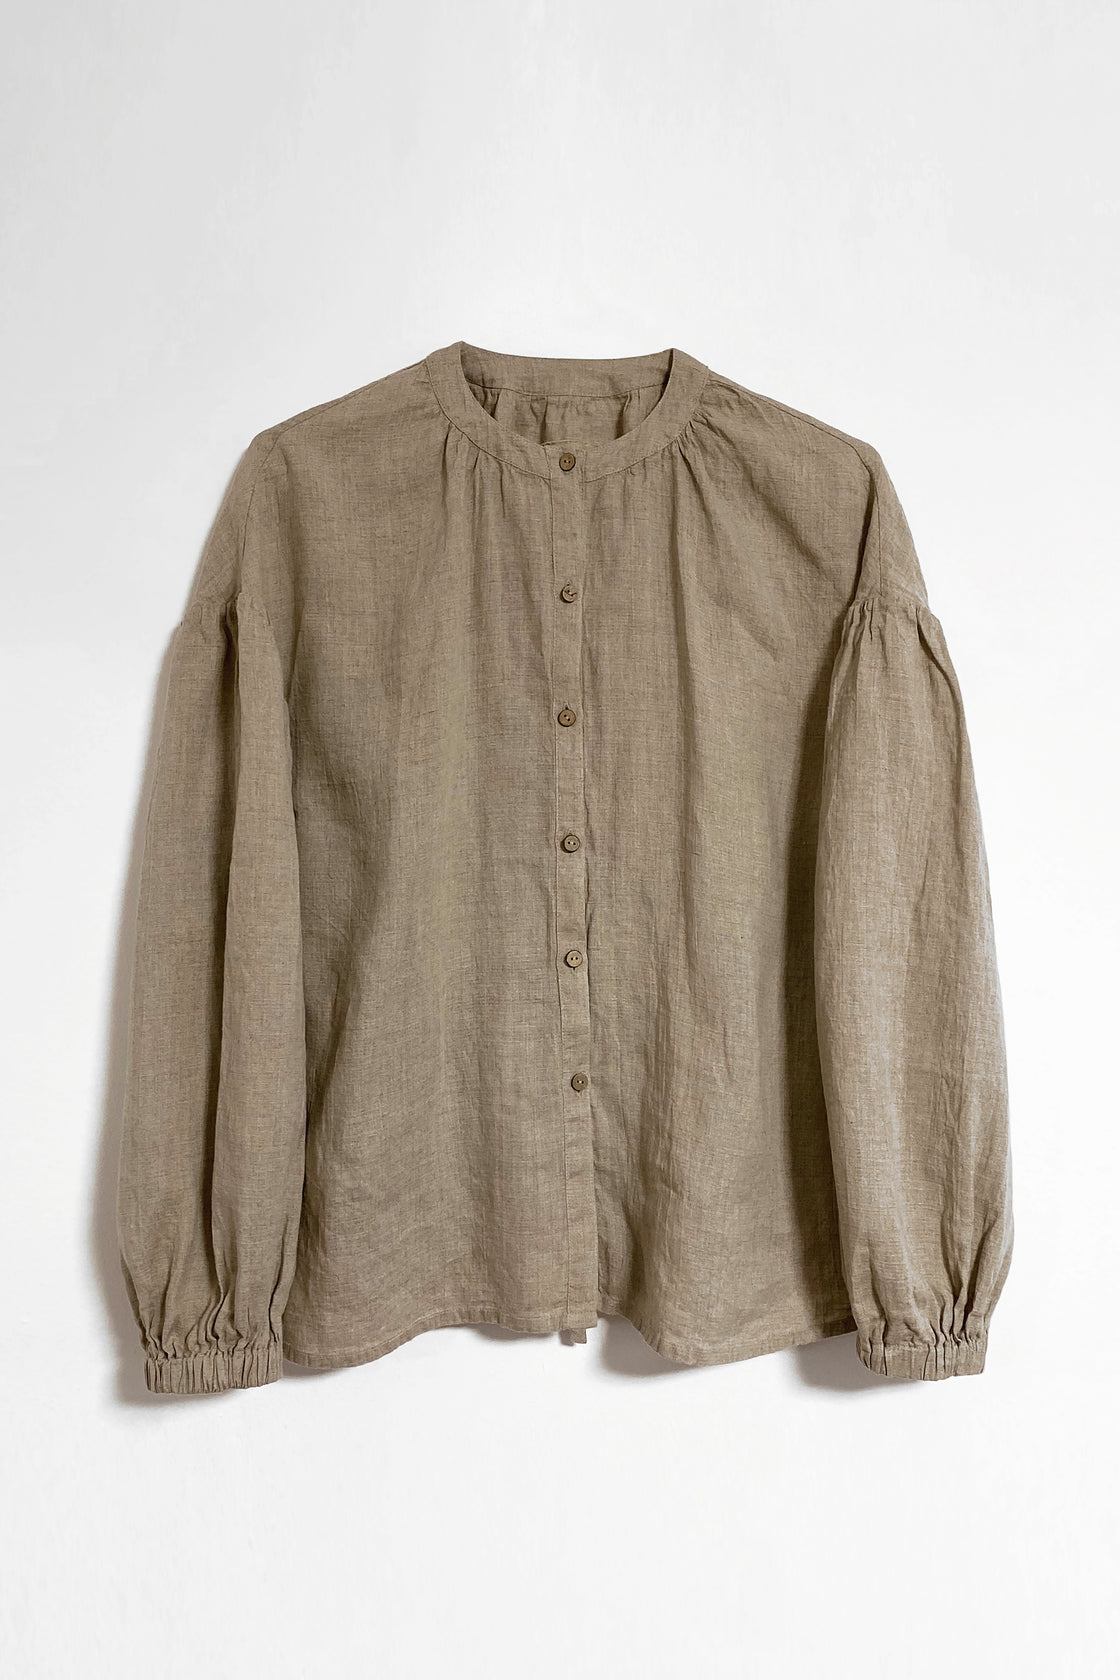 Undyed linen blouse - Manufacture de Lin